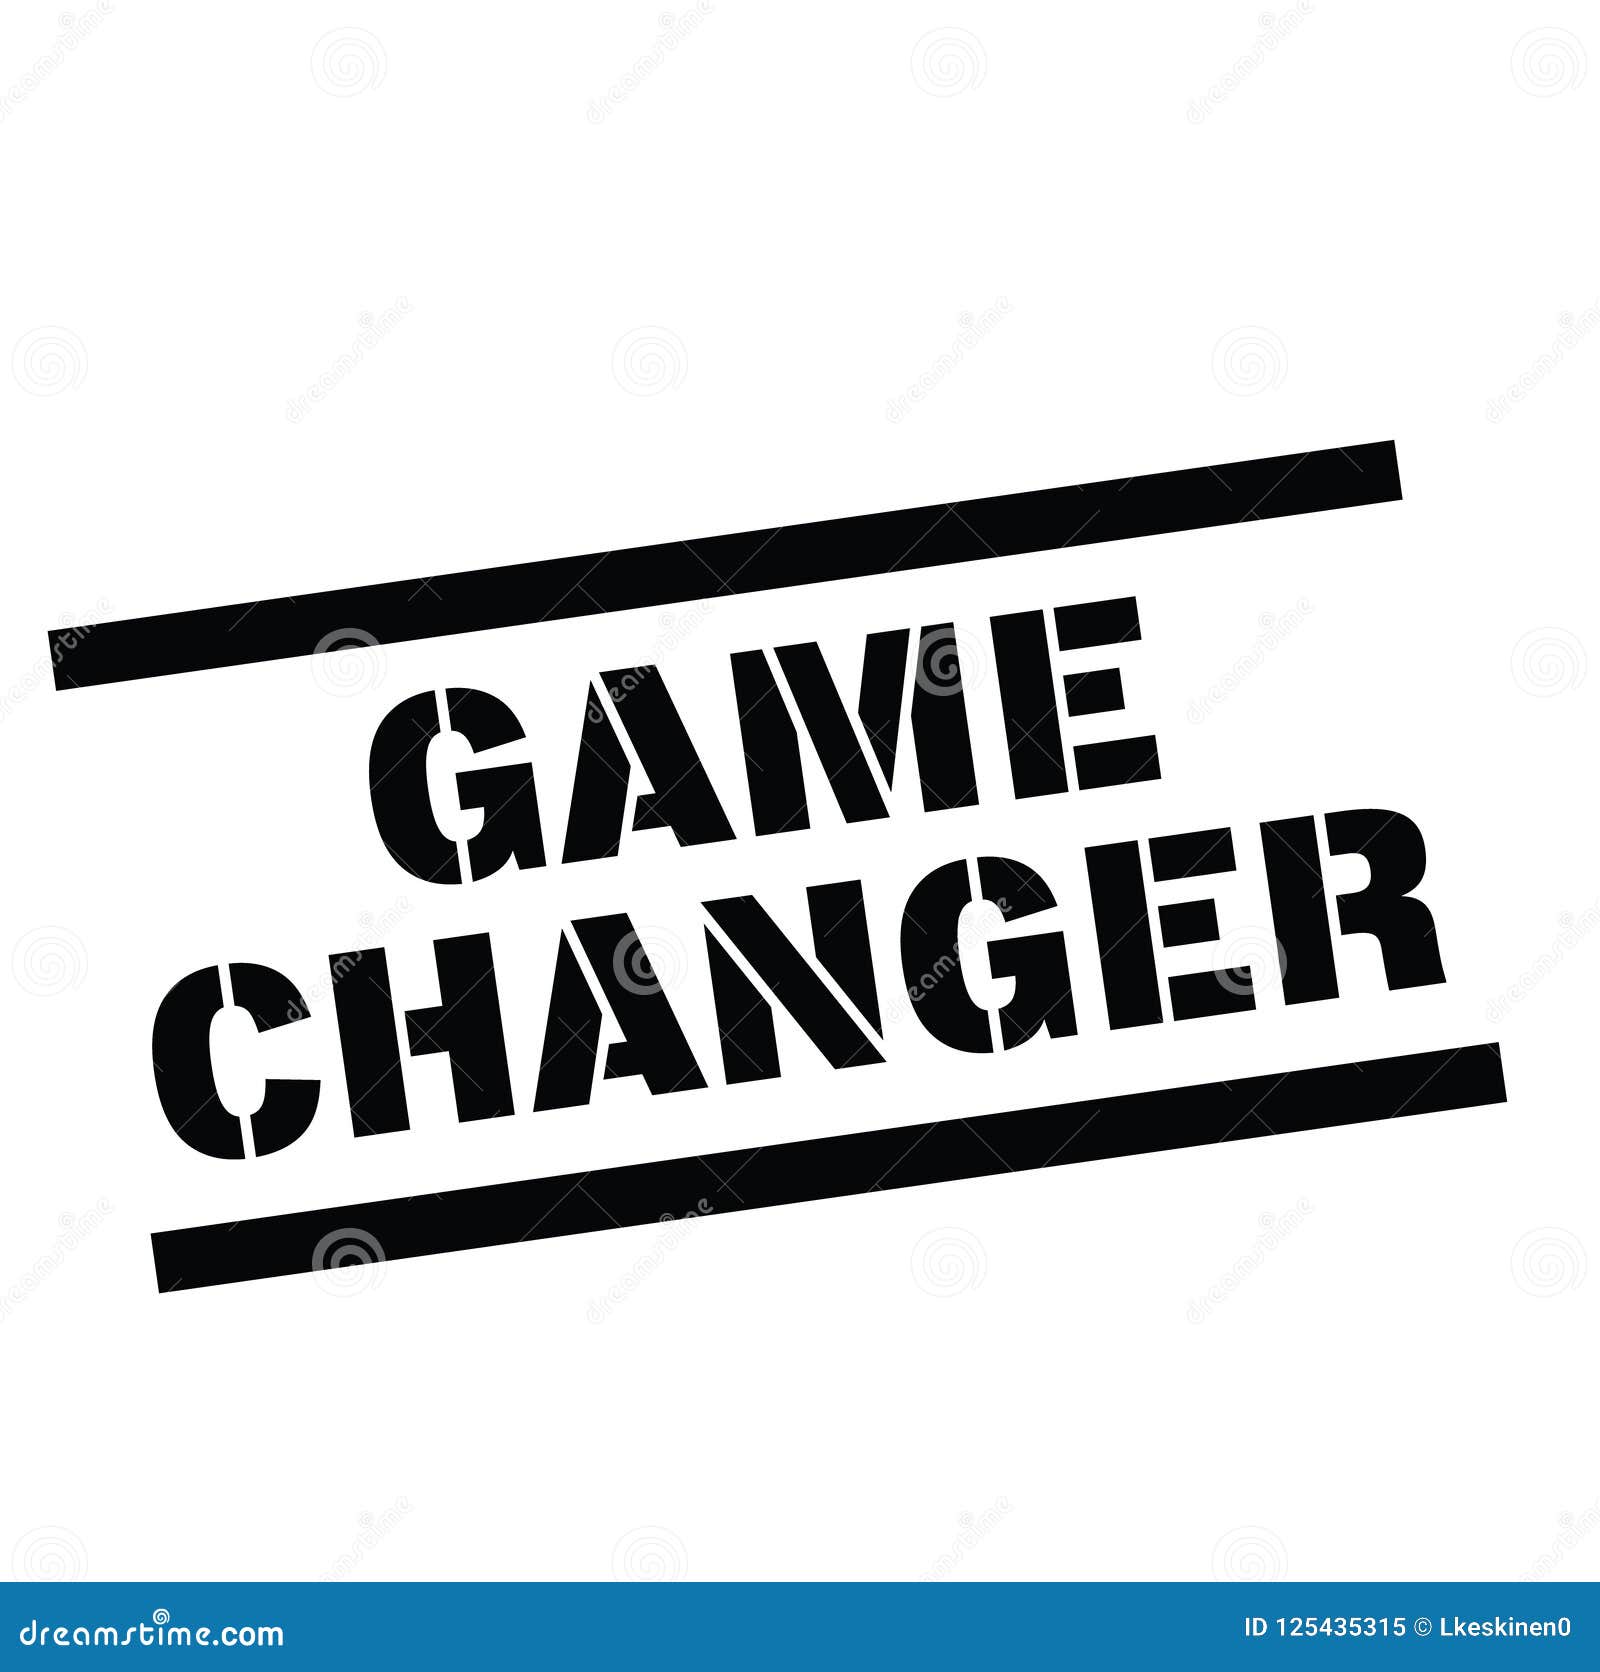 Con dấu Game Changer là một công cụ vô cùng hữu ích, đặc biệt đối với các nhà tiếp thị và nhà phát triển sản phẩm. Nó giúp bạn đánh dấu các sản phẩm đột phá, đổi mới và làm nổi bật chúng từ những sản phẩm truyền thống khác. Hãy xem hình ảnh liên quan đến Game Changer để khám phá các tính năng và ưu điểm của nó.